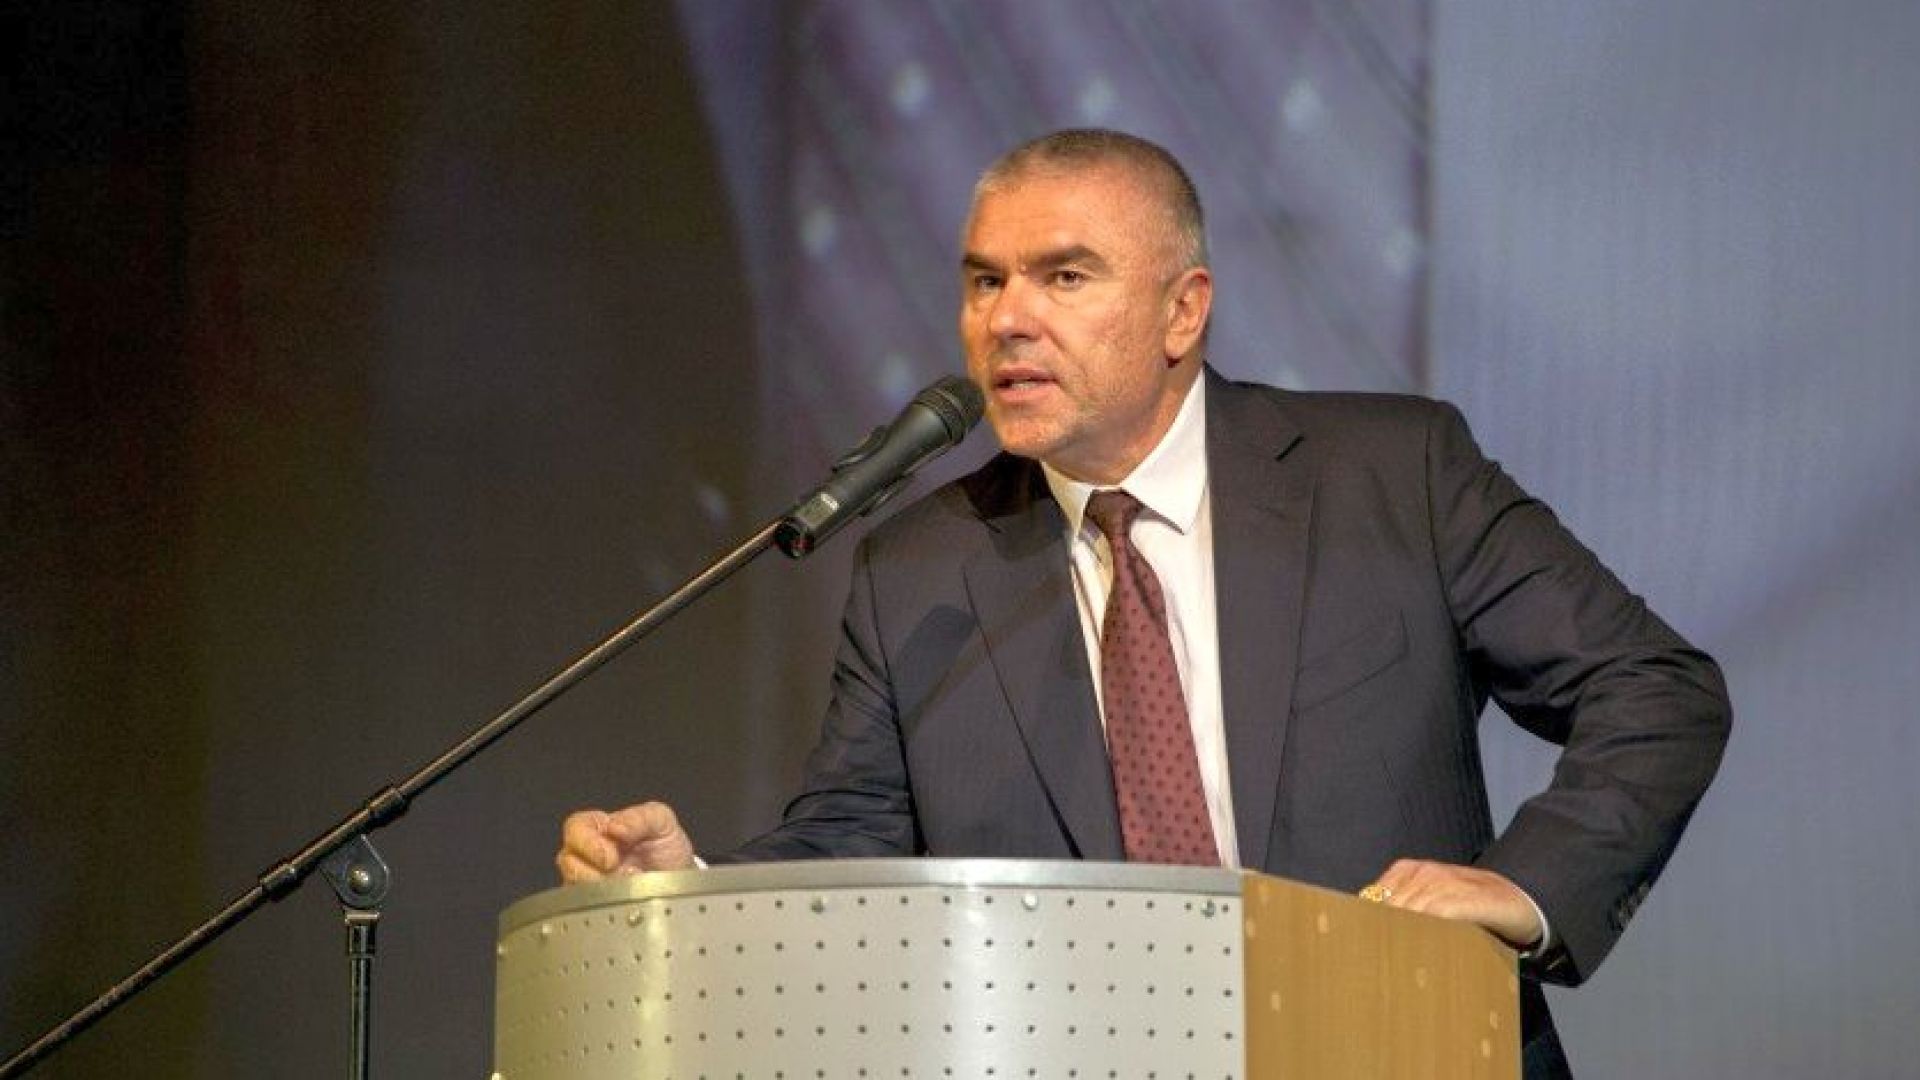 Веселин Марешки председател на ВОЛЯ заяви преди окончателния резултат от